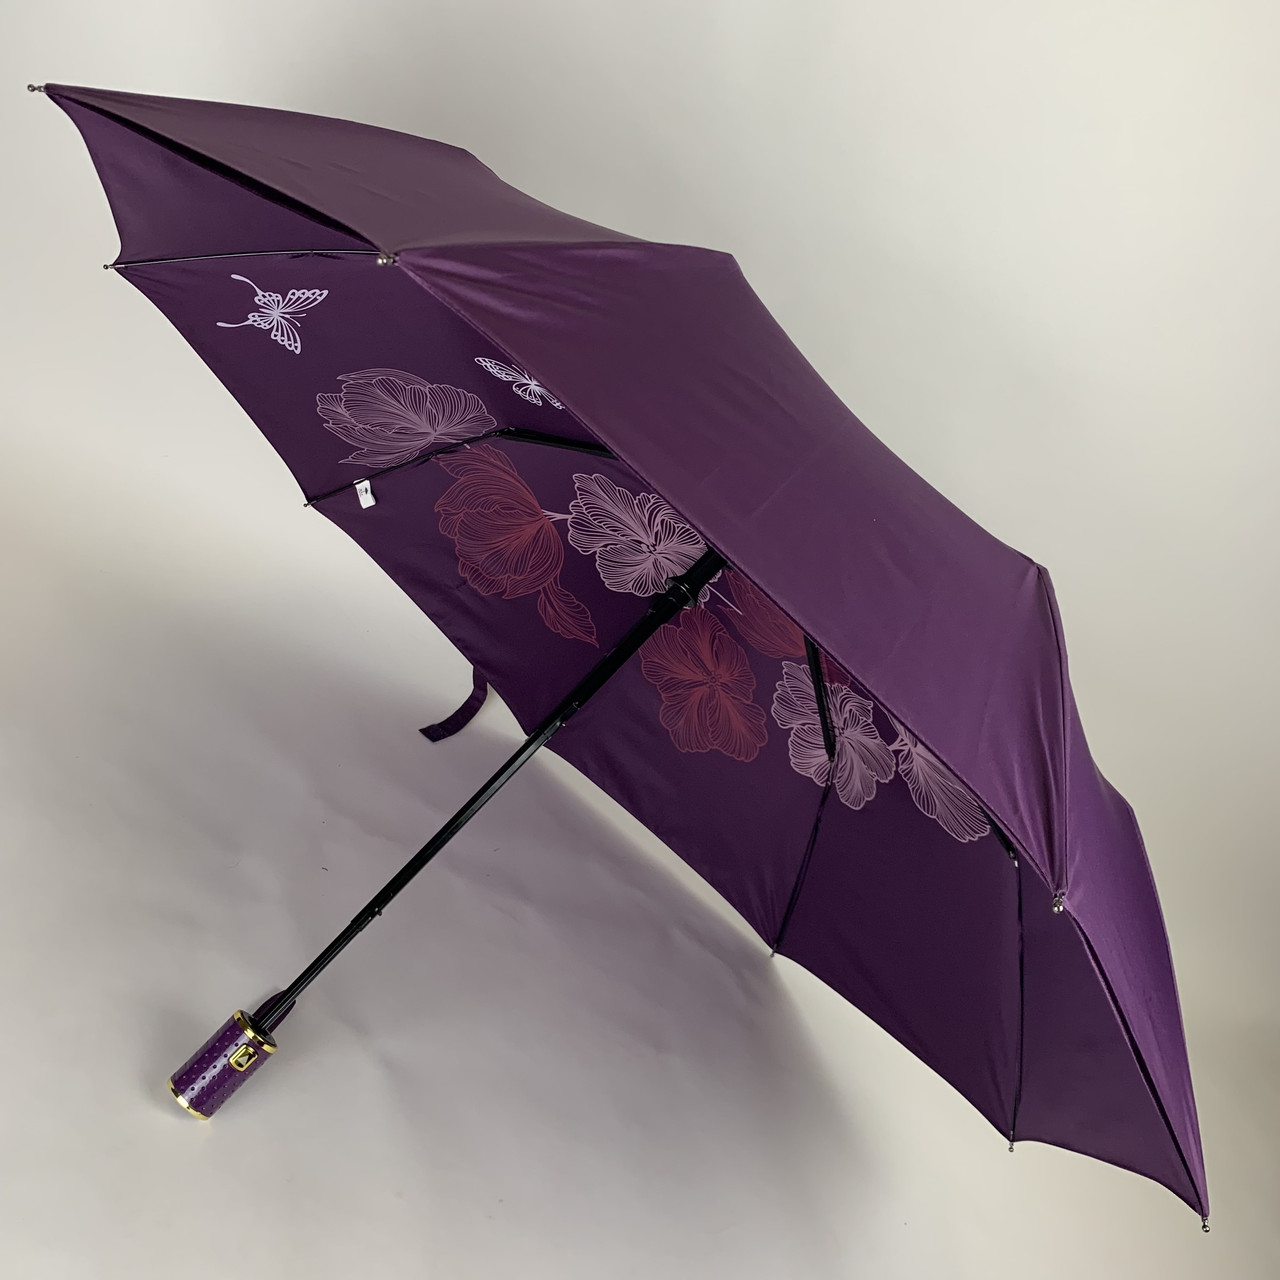 Жіноча складна парасоля напівавтомат з подвійною тканиною з принтом квітів, фіолетовий, top0134-1